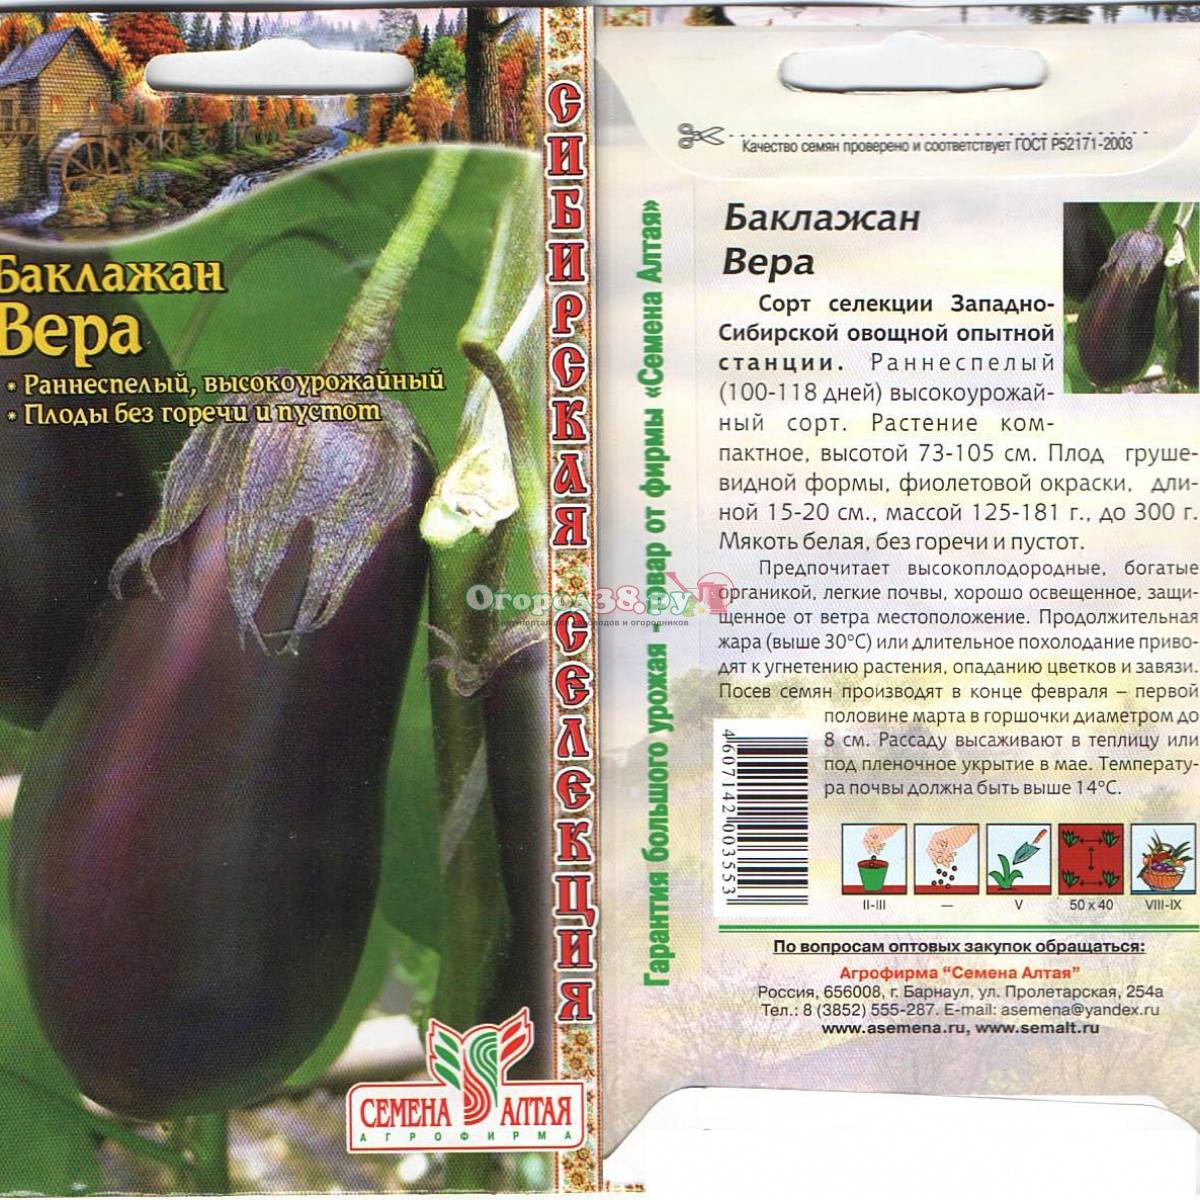 Баклажан вера - универсальный сорт для выращивания в условиях открытого грунта и в теплицах